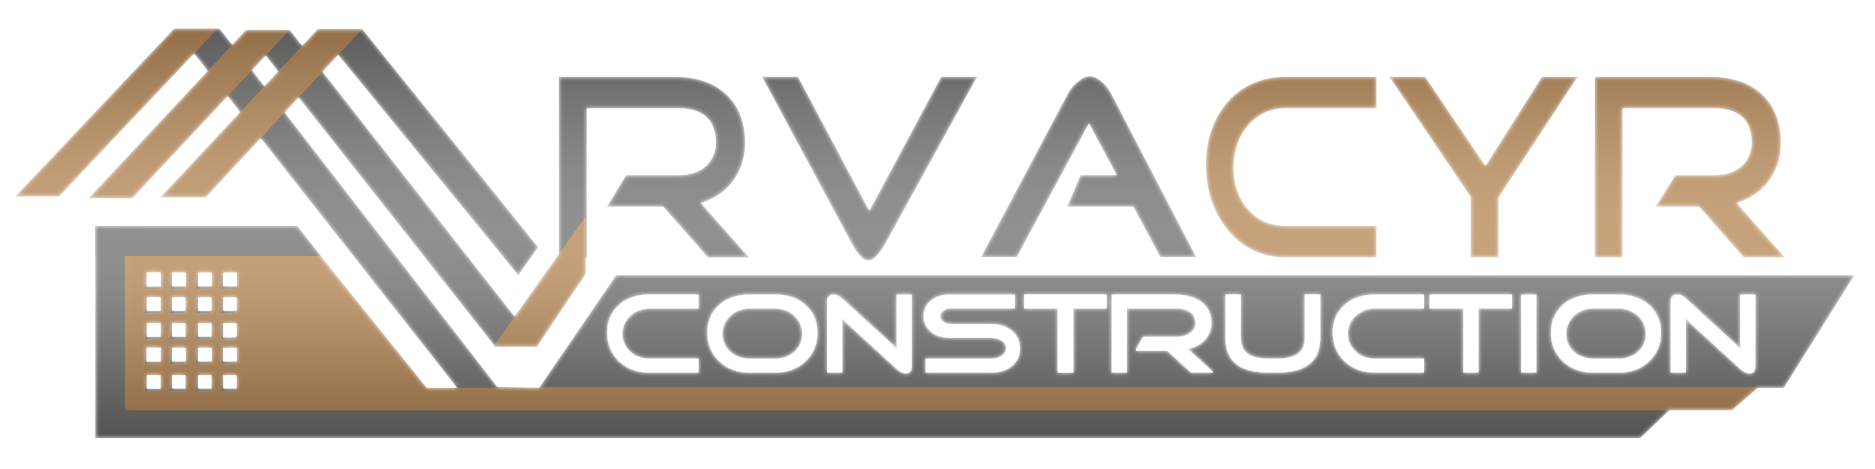 RVA CYR Construction